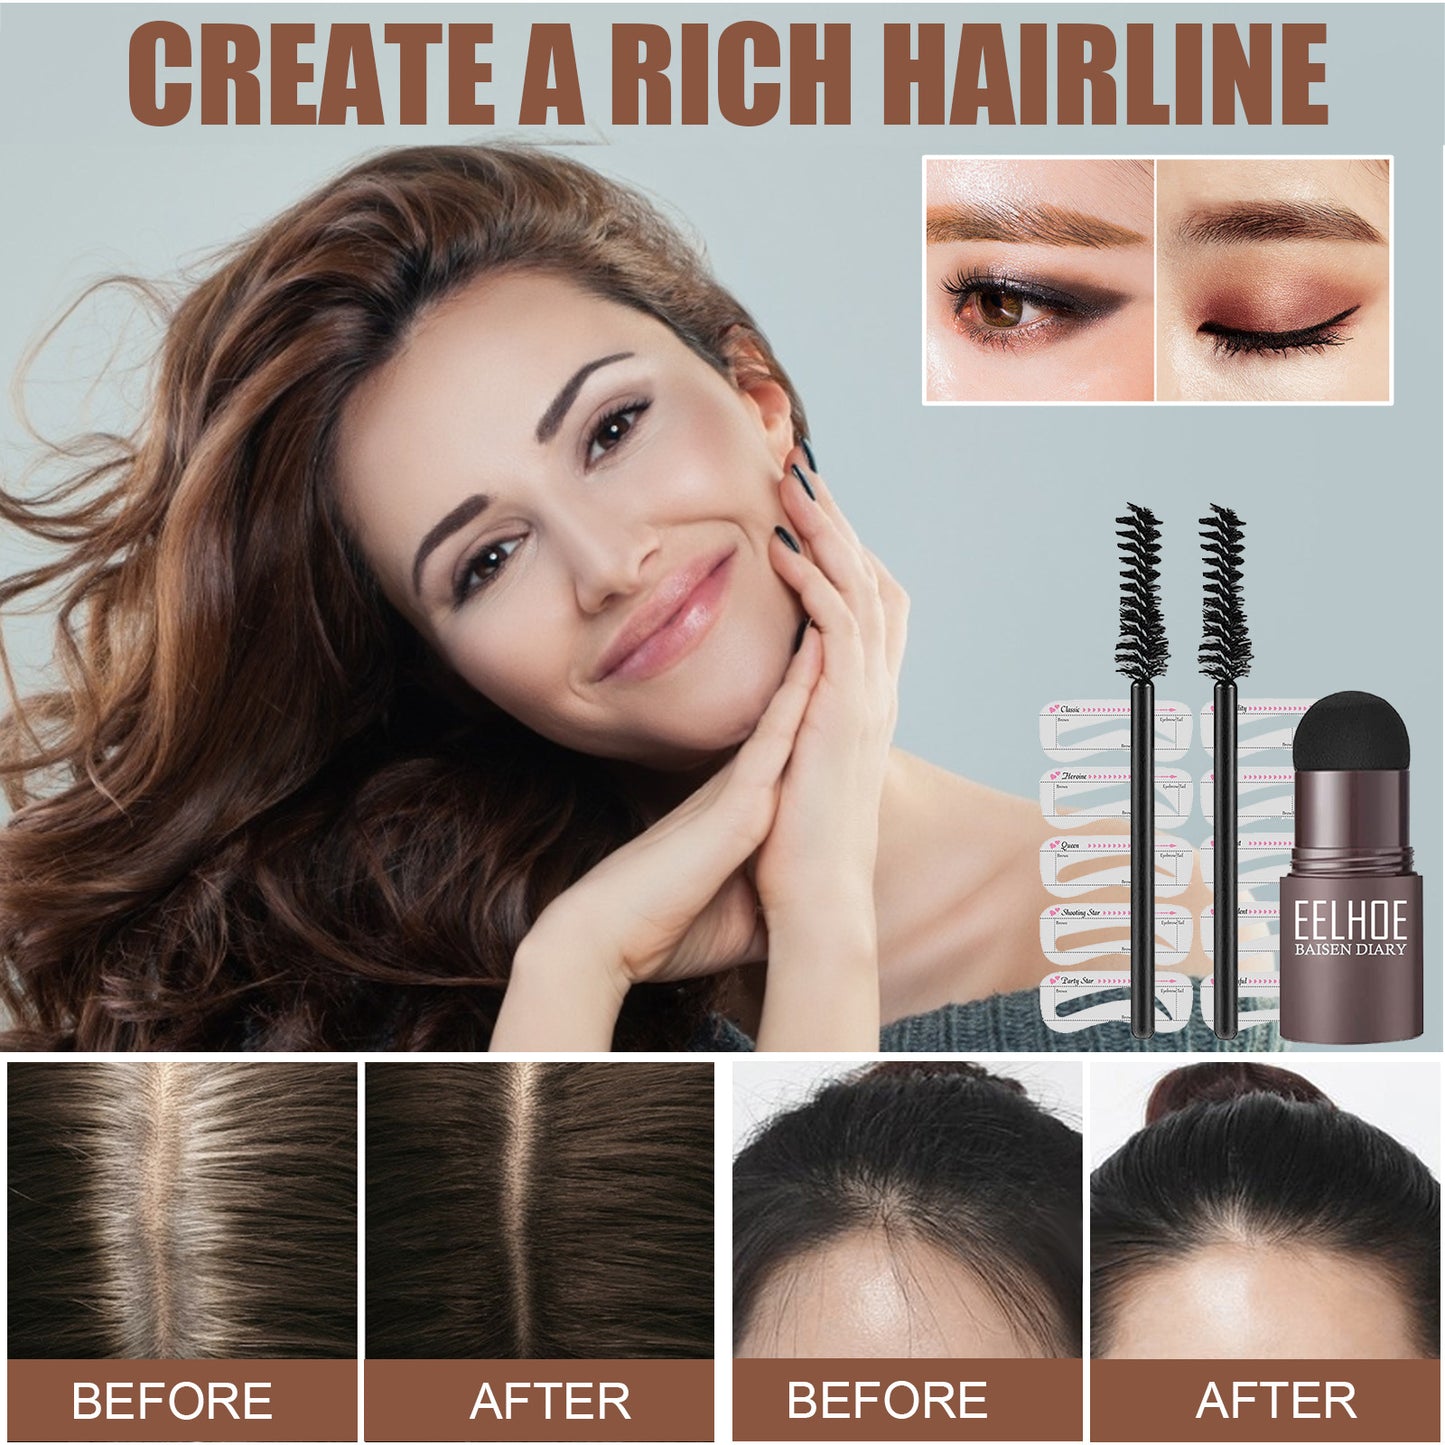 Eyebrow Stencil Powder Set | Hairline Powder | WATERPROOF